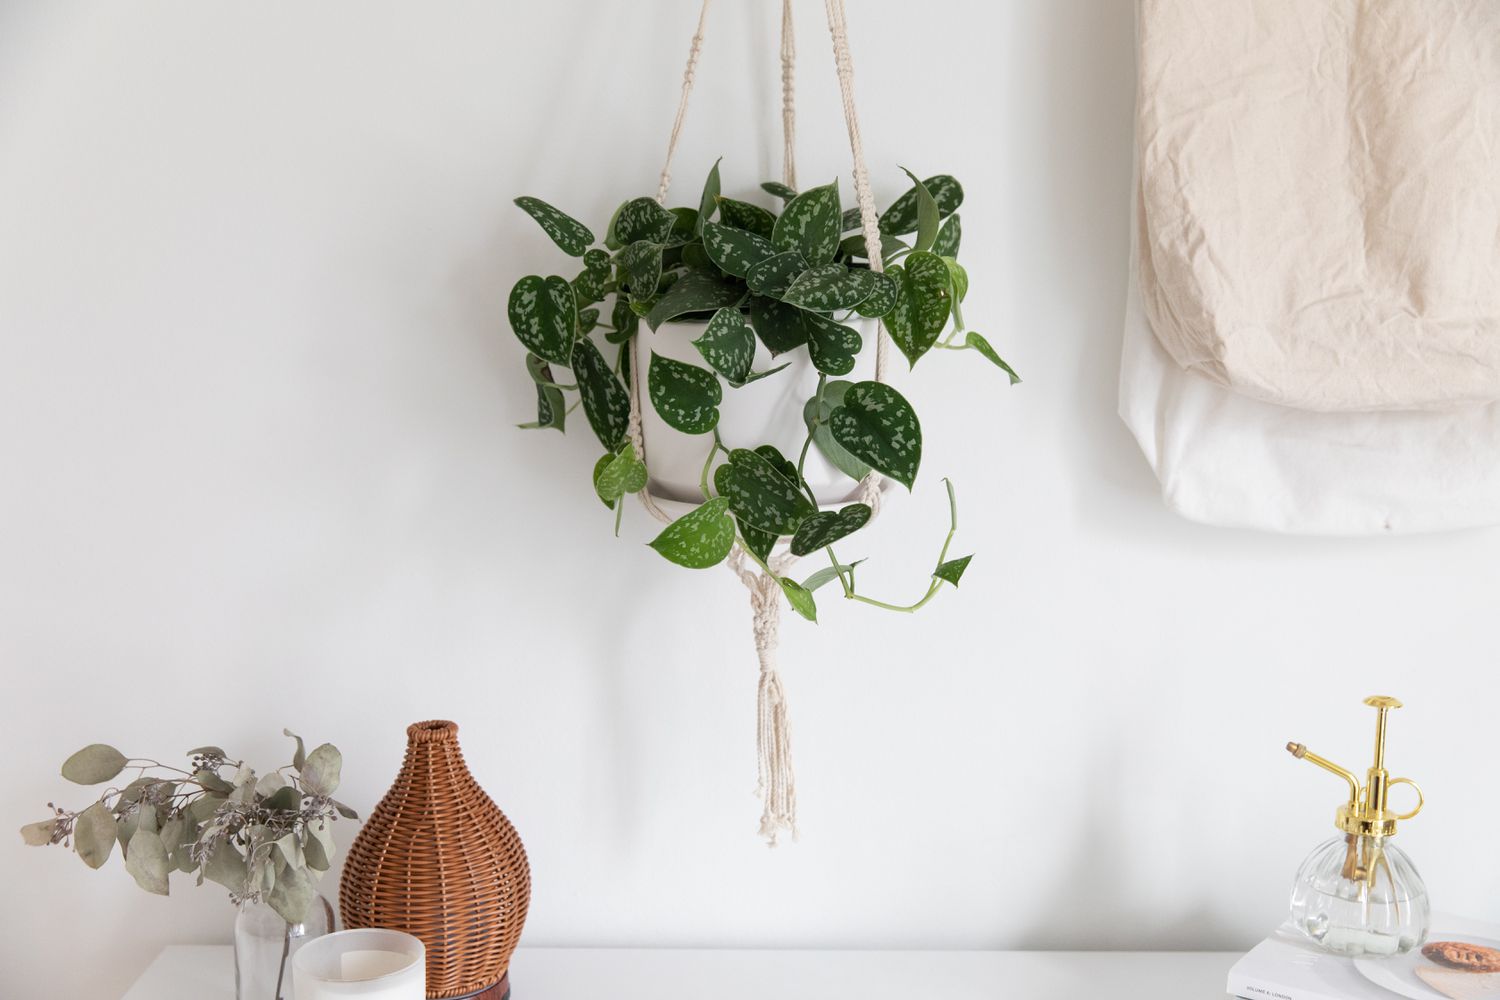 Satin pothos in white hanging planter over white desk